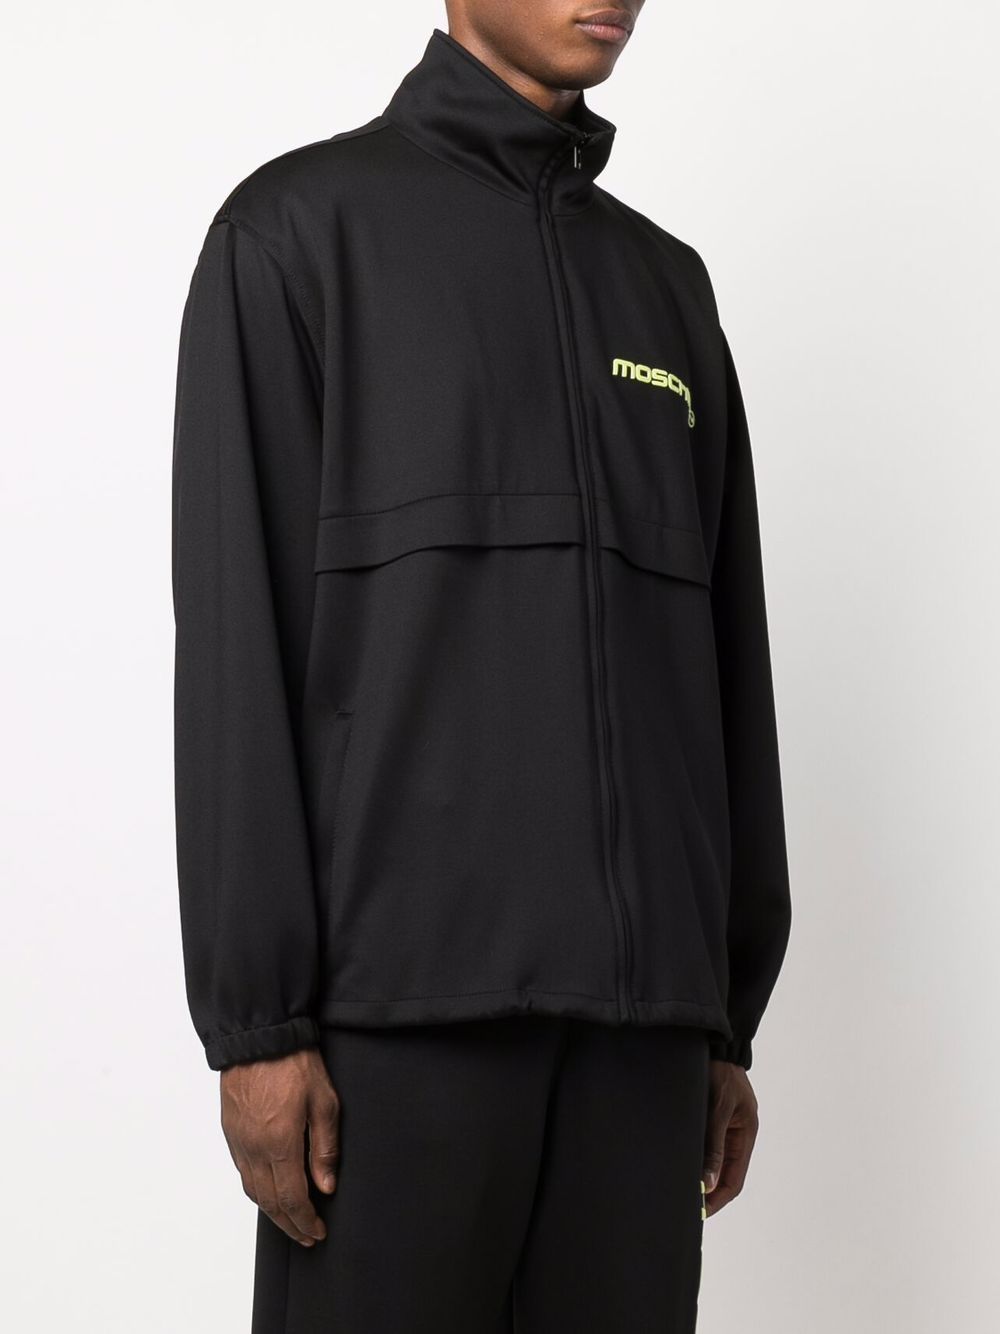 фото Moschino куртка с воротником-воронкой и логотипом